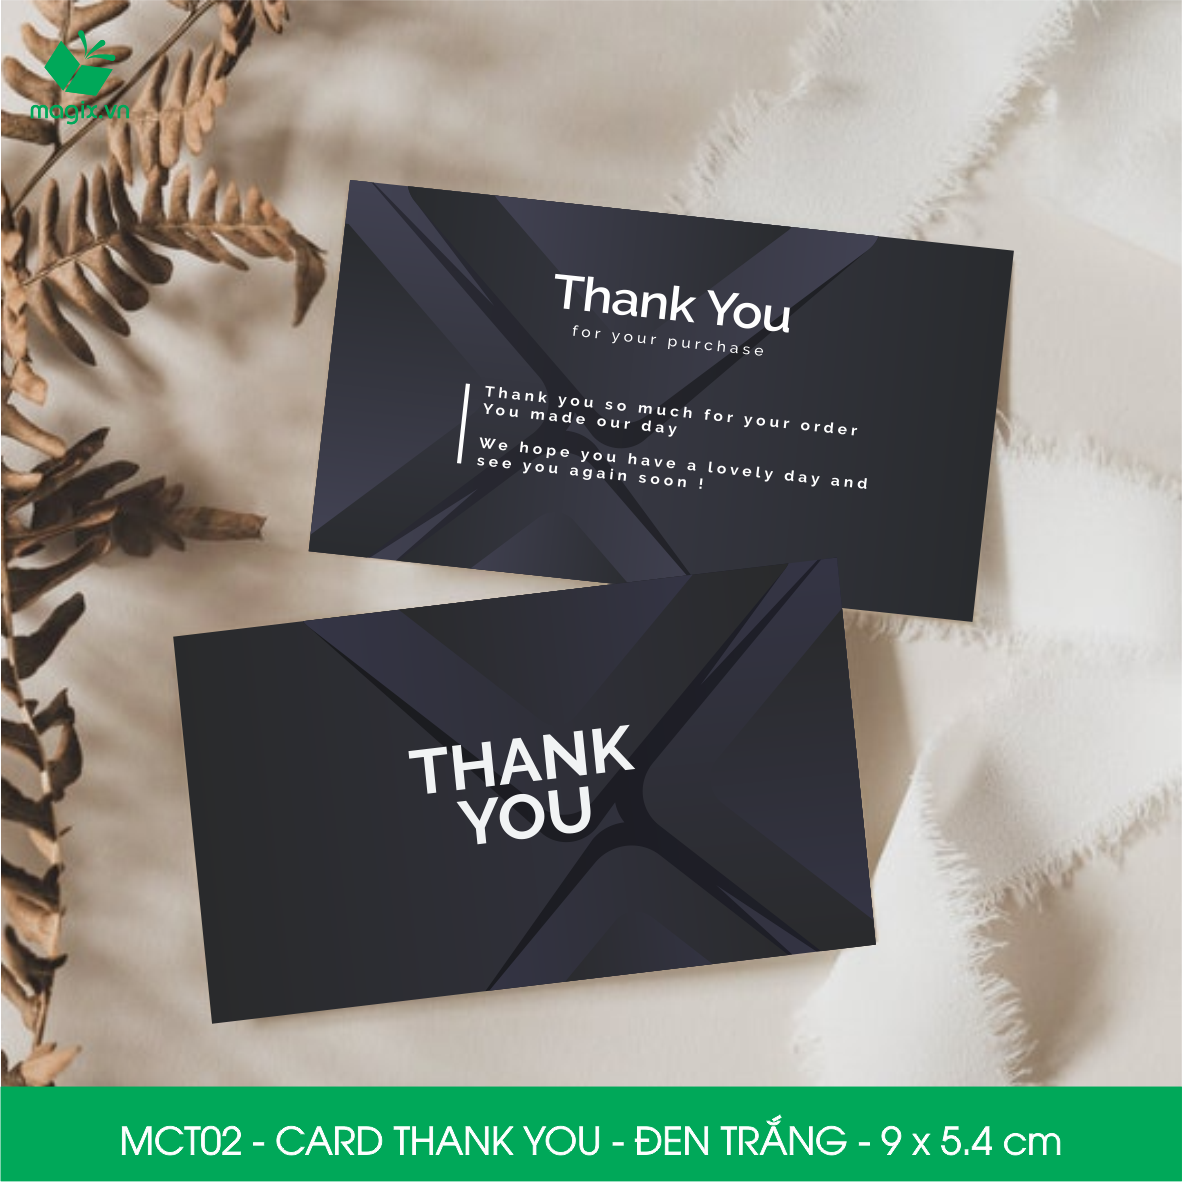 MCT02 - 9x5.4 cm - 1000 Card Thank you, Thiệp cảm ơn khách hàng, card cám ơn cứng cáp sang trọng